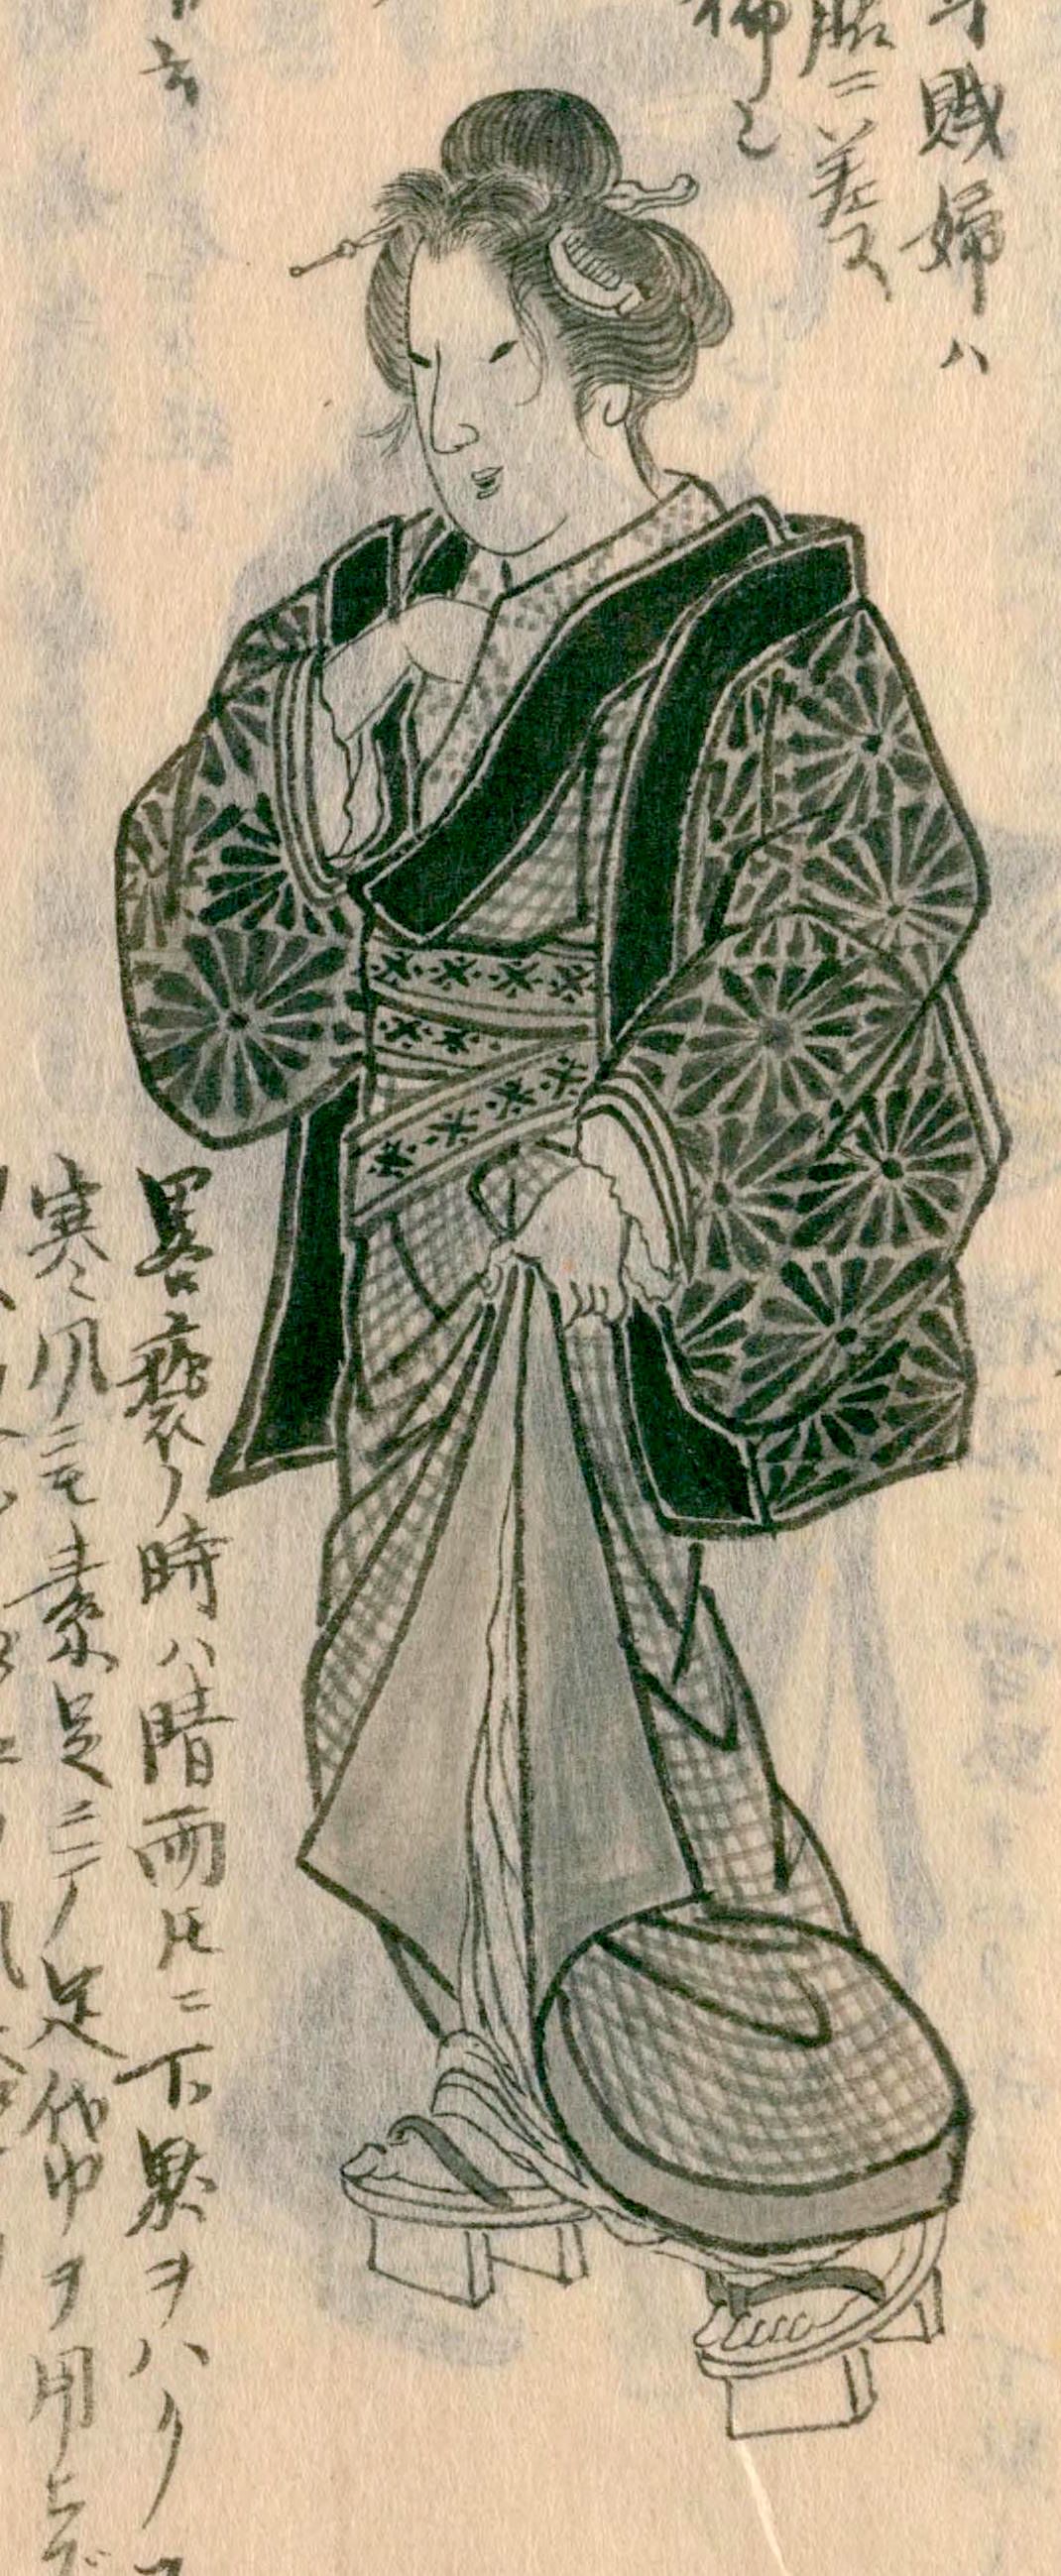 El traje de una mujer casada. De Morisada mankō (Manuscrito de Morisada).